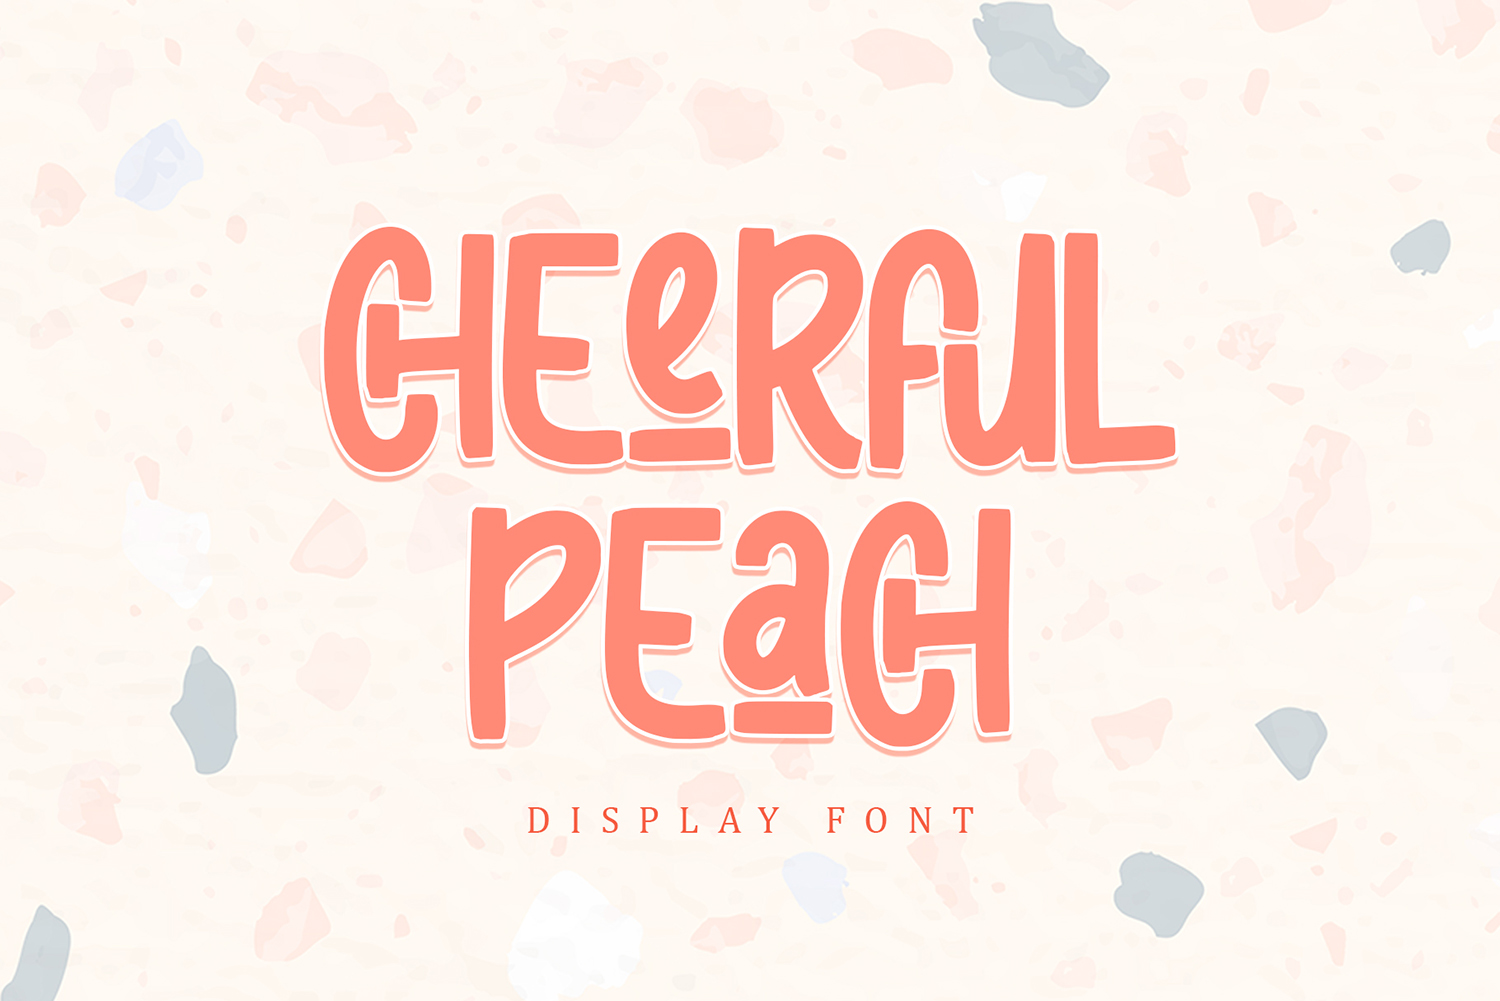 Cheerful Peach Free Font